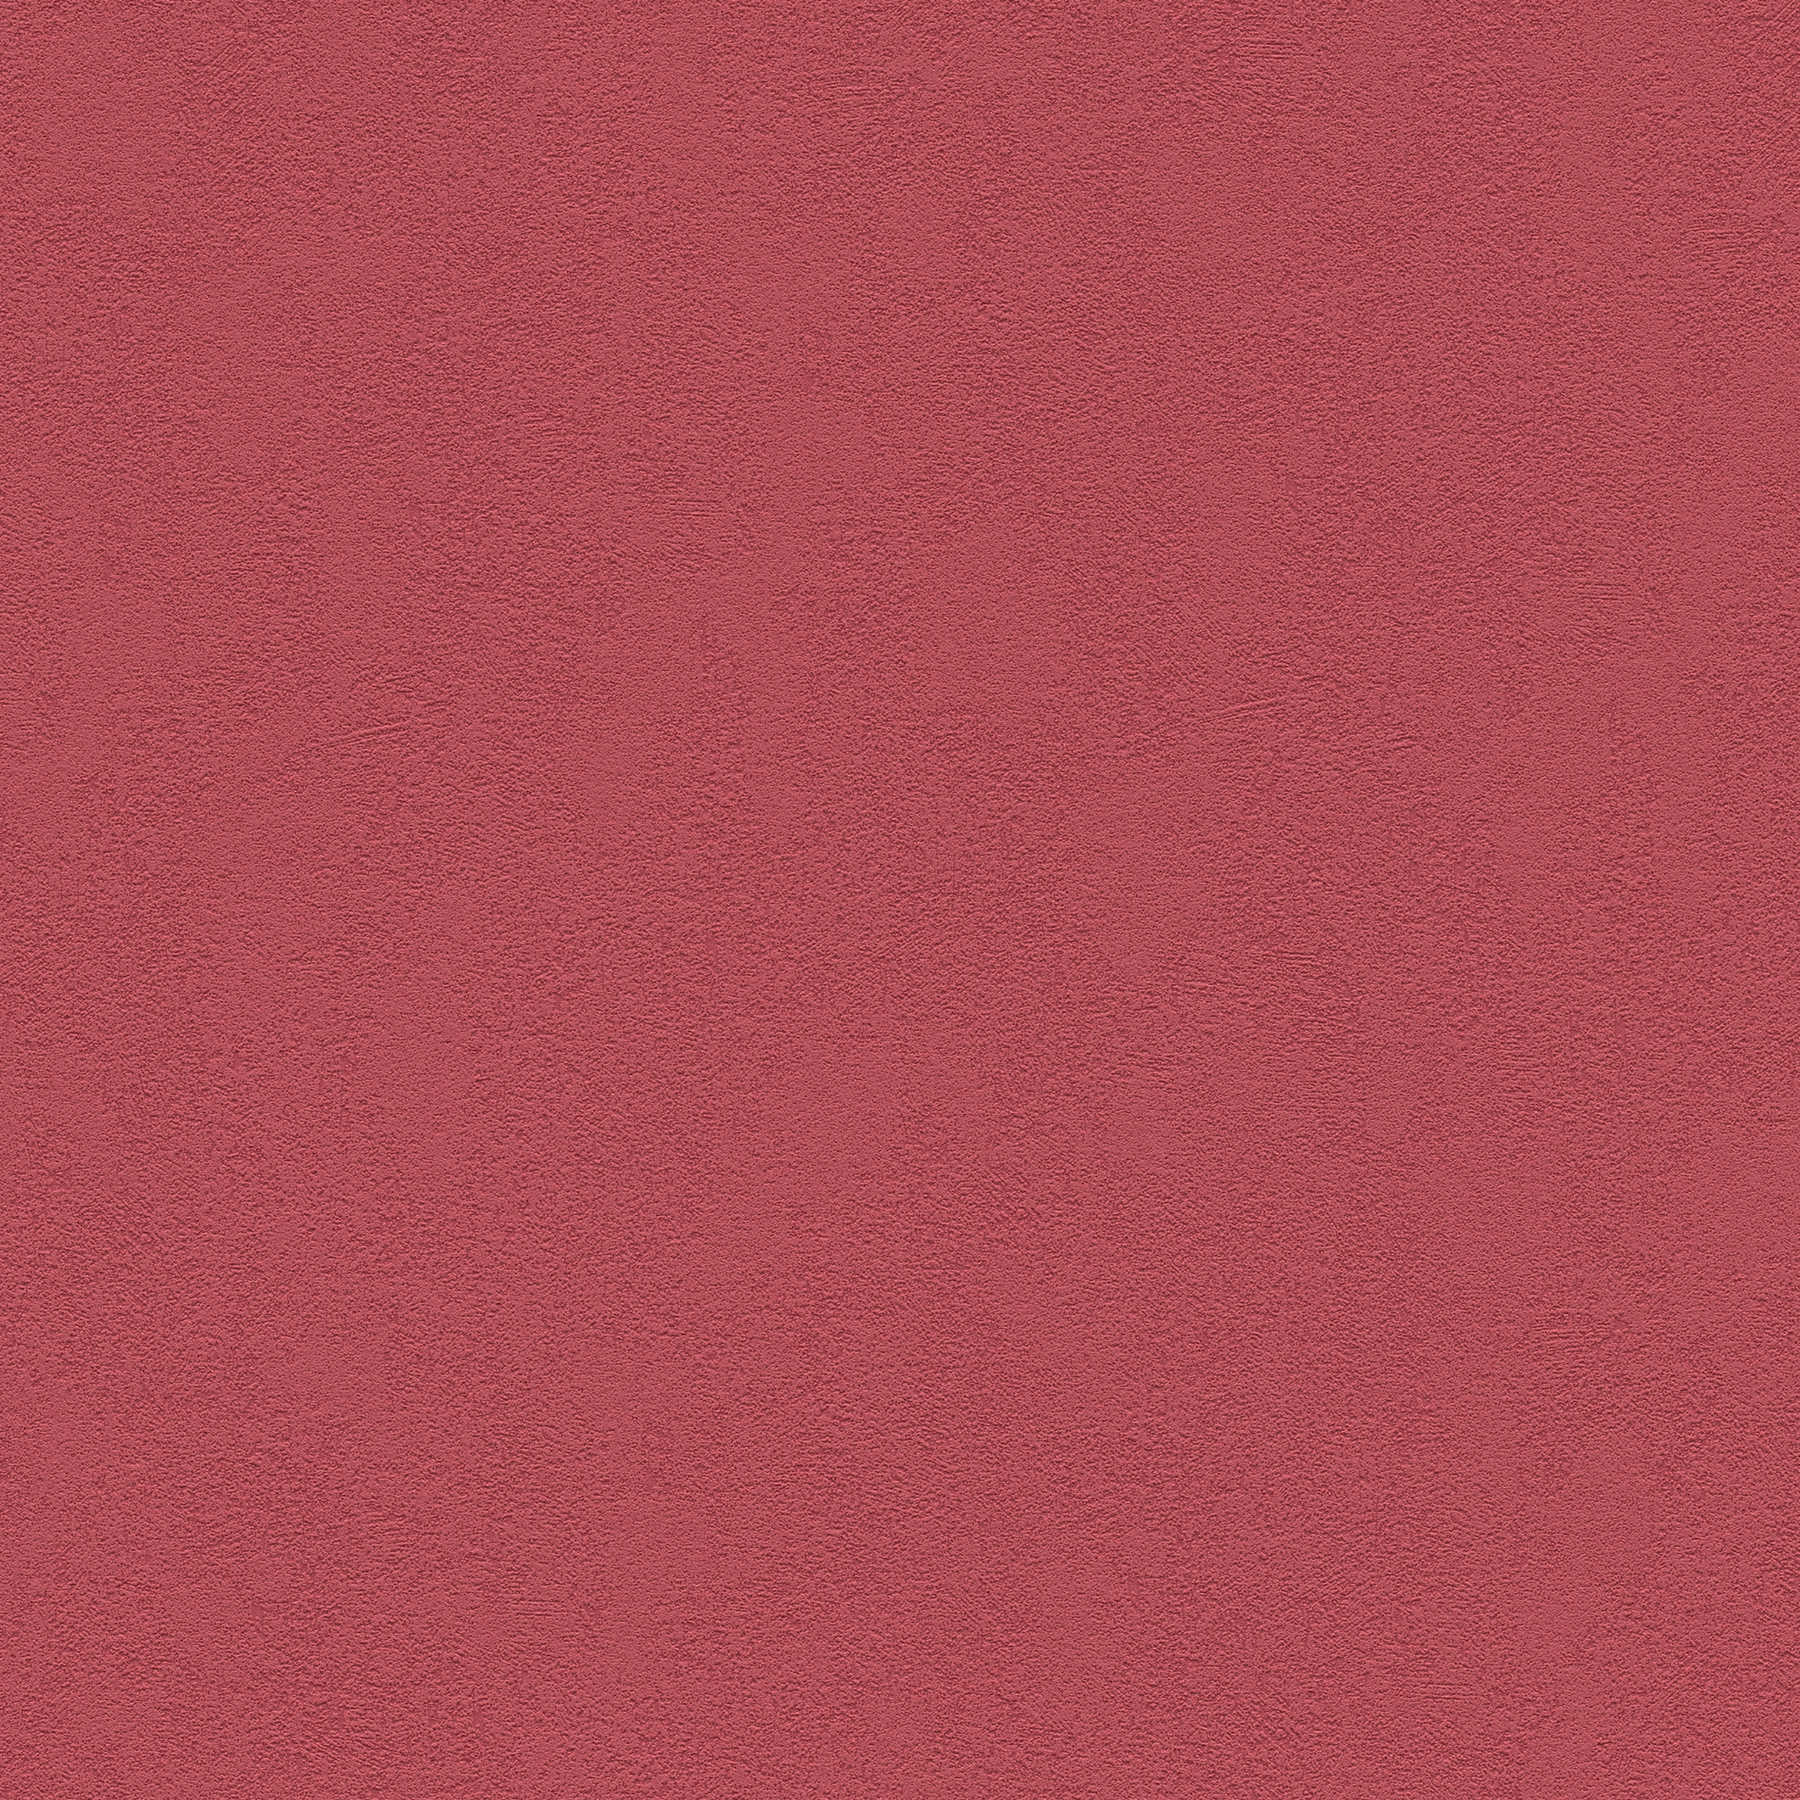 Papel pintado no tejido rojo oscuro liso con superficie texturizada
